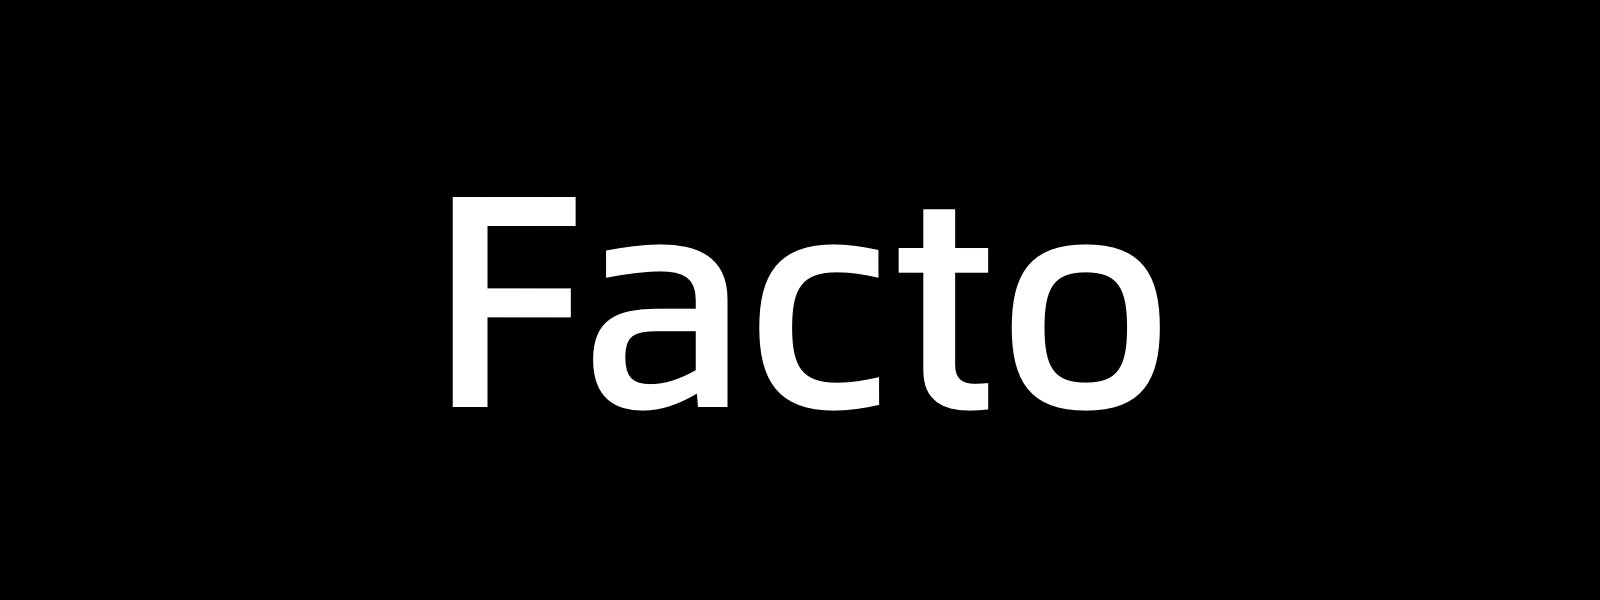 Facto Typeface